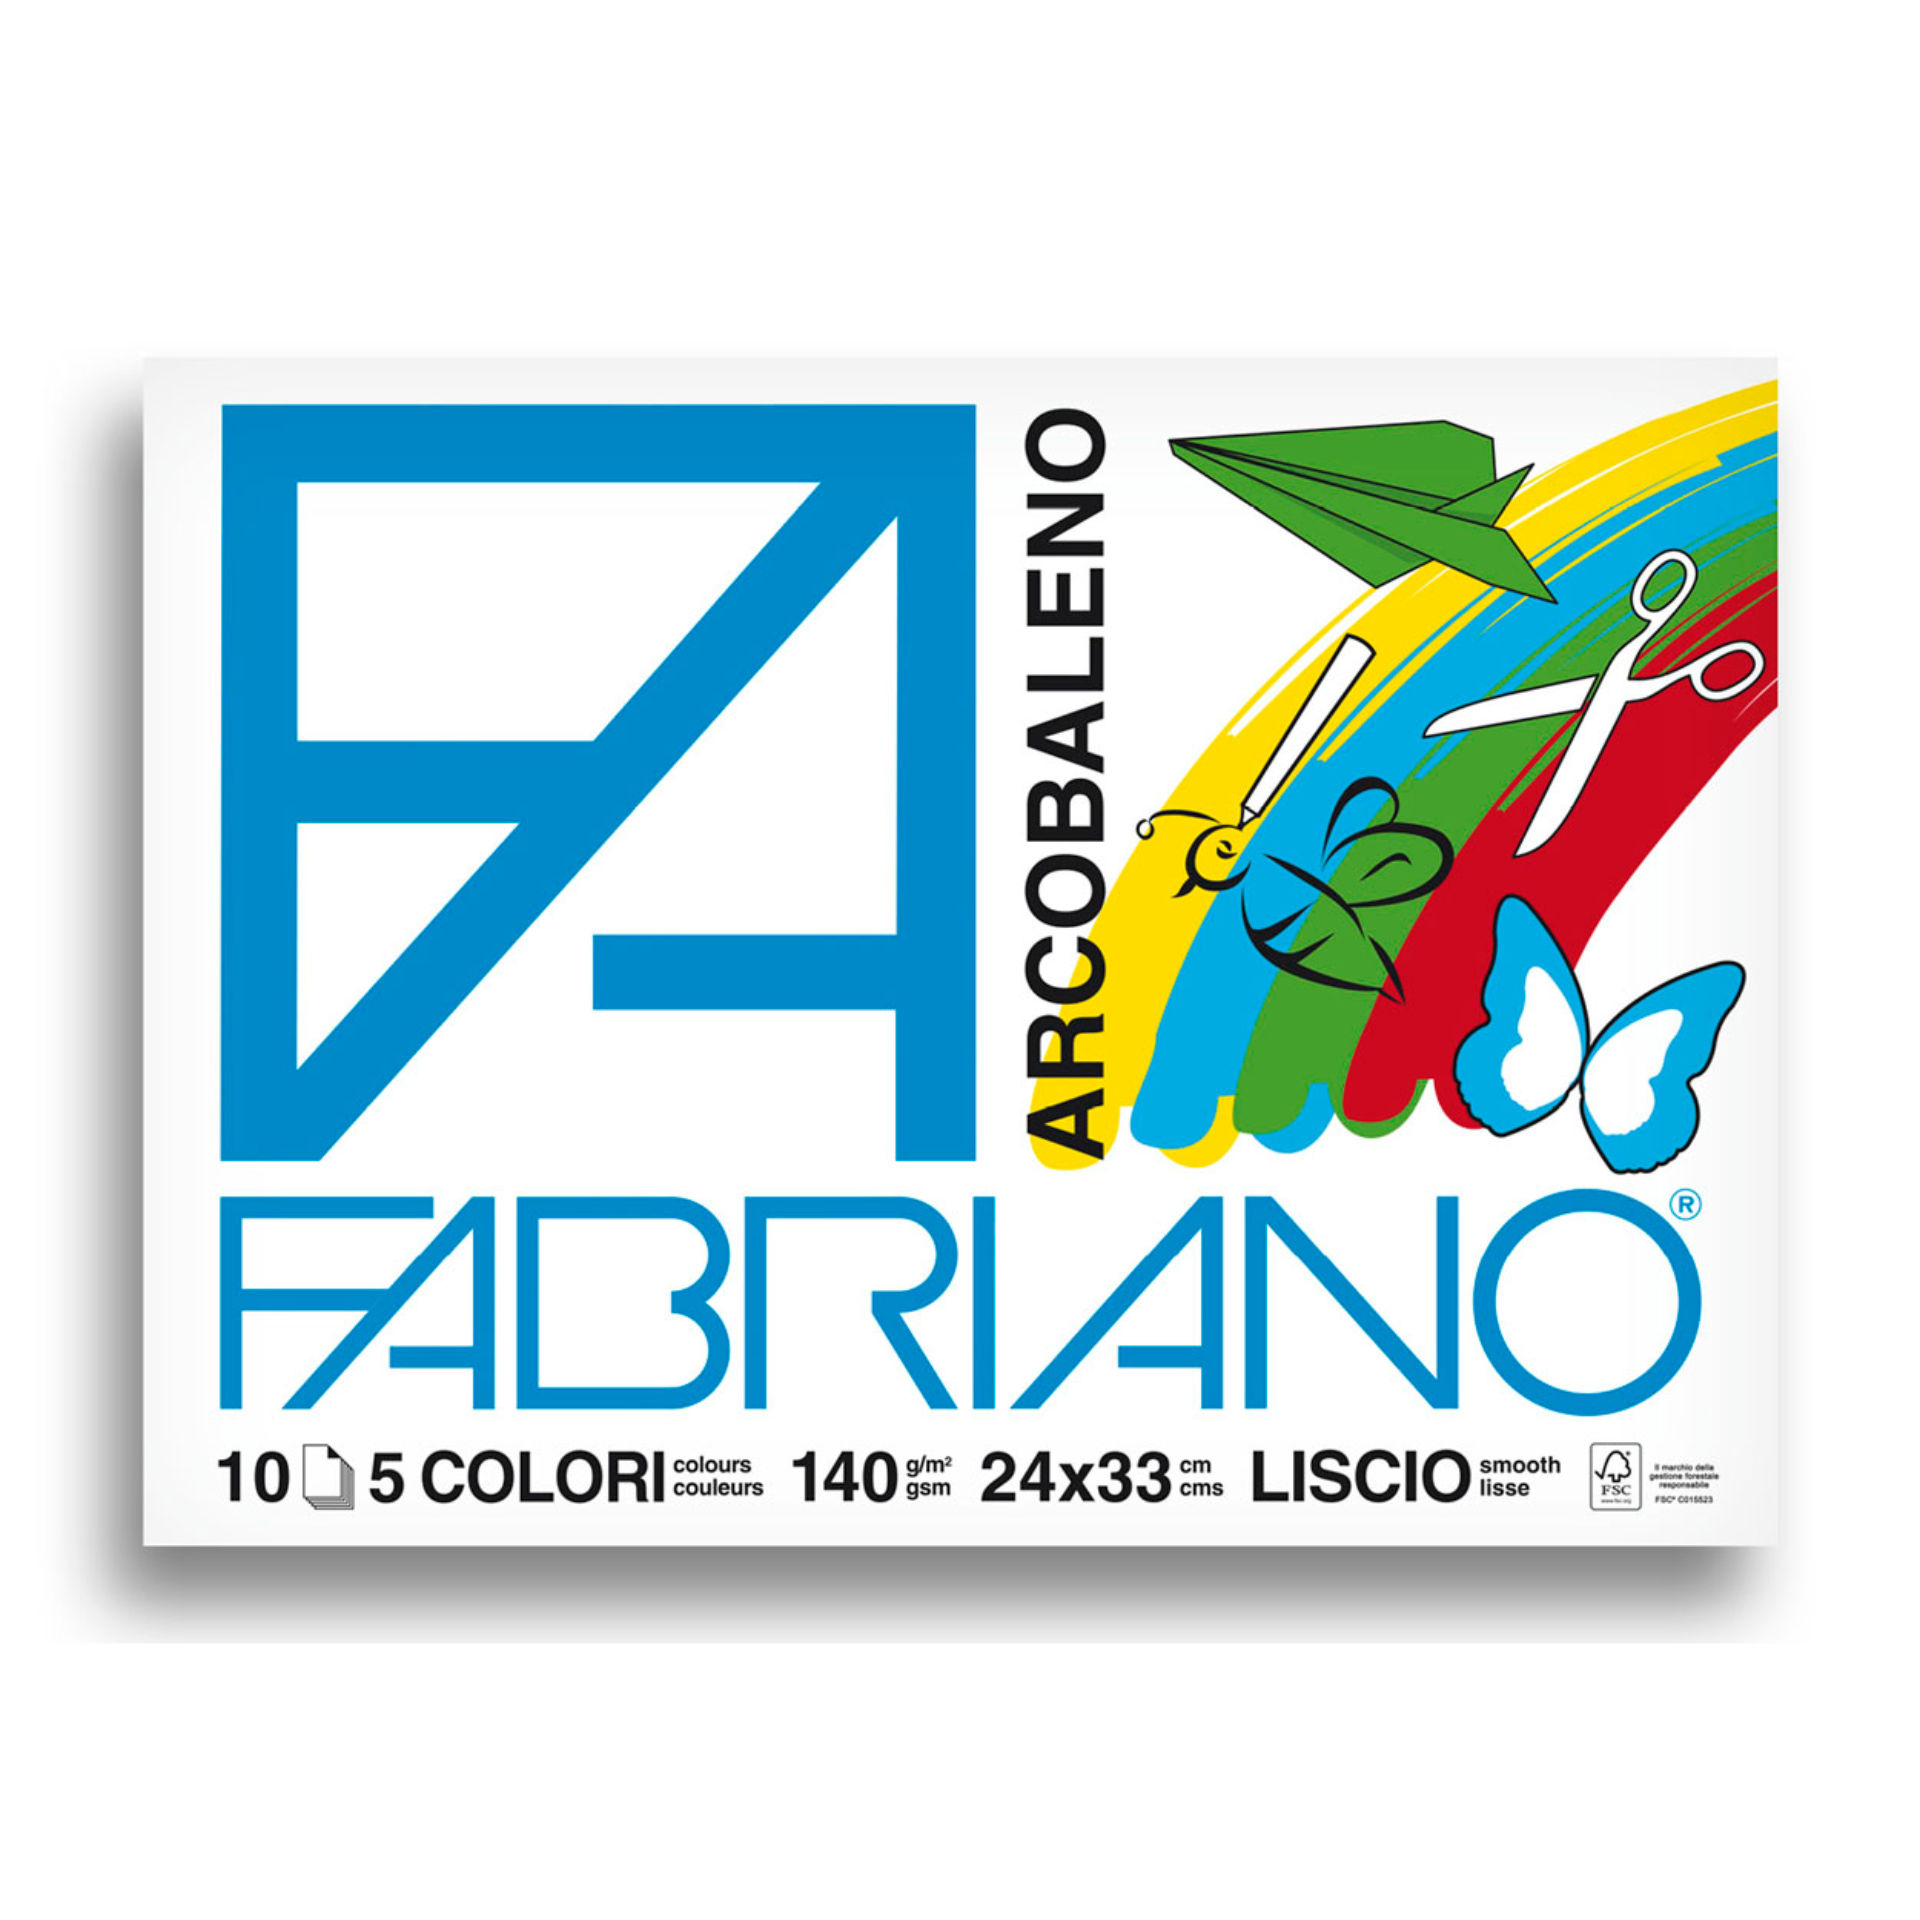 ALBUM FABRIANO ARCOBALENO 24X33 FG. 10 GR. 140Fabriano